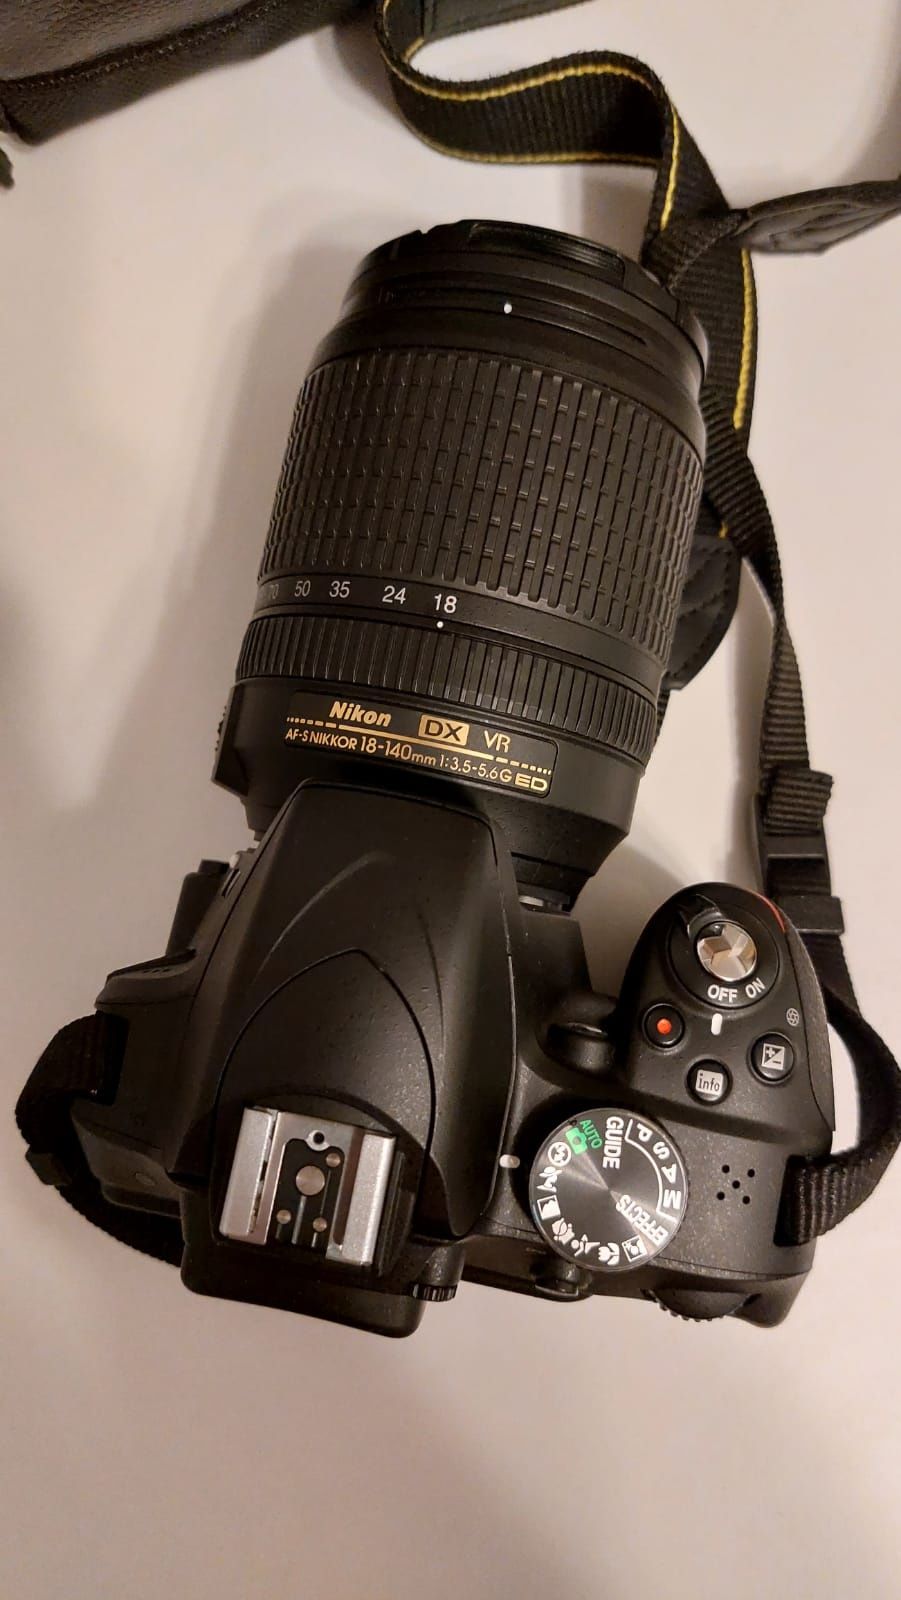 Nikon D3300 cu obiectiv Nikorr 18-140mm